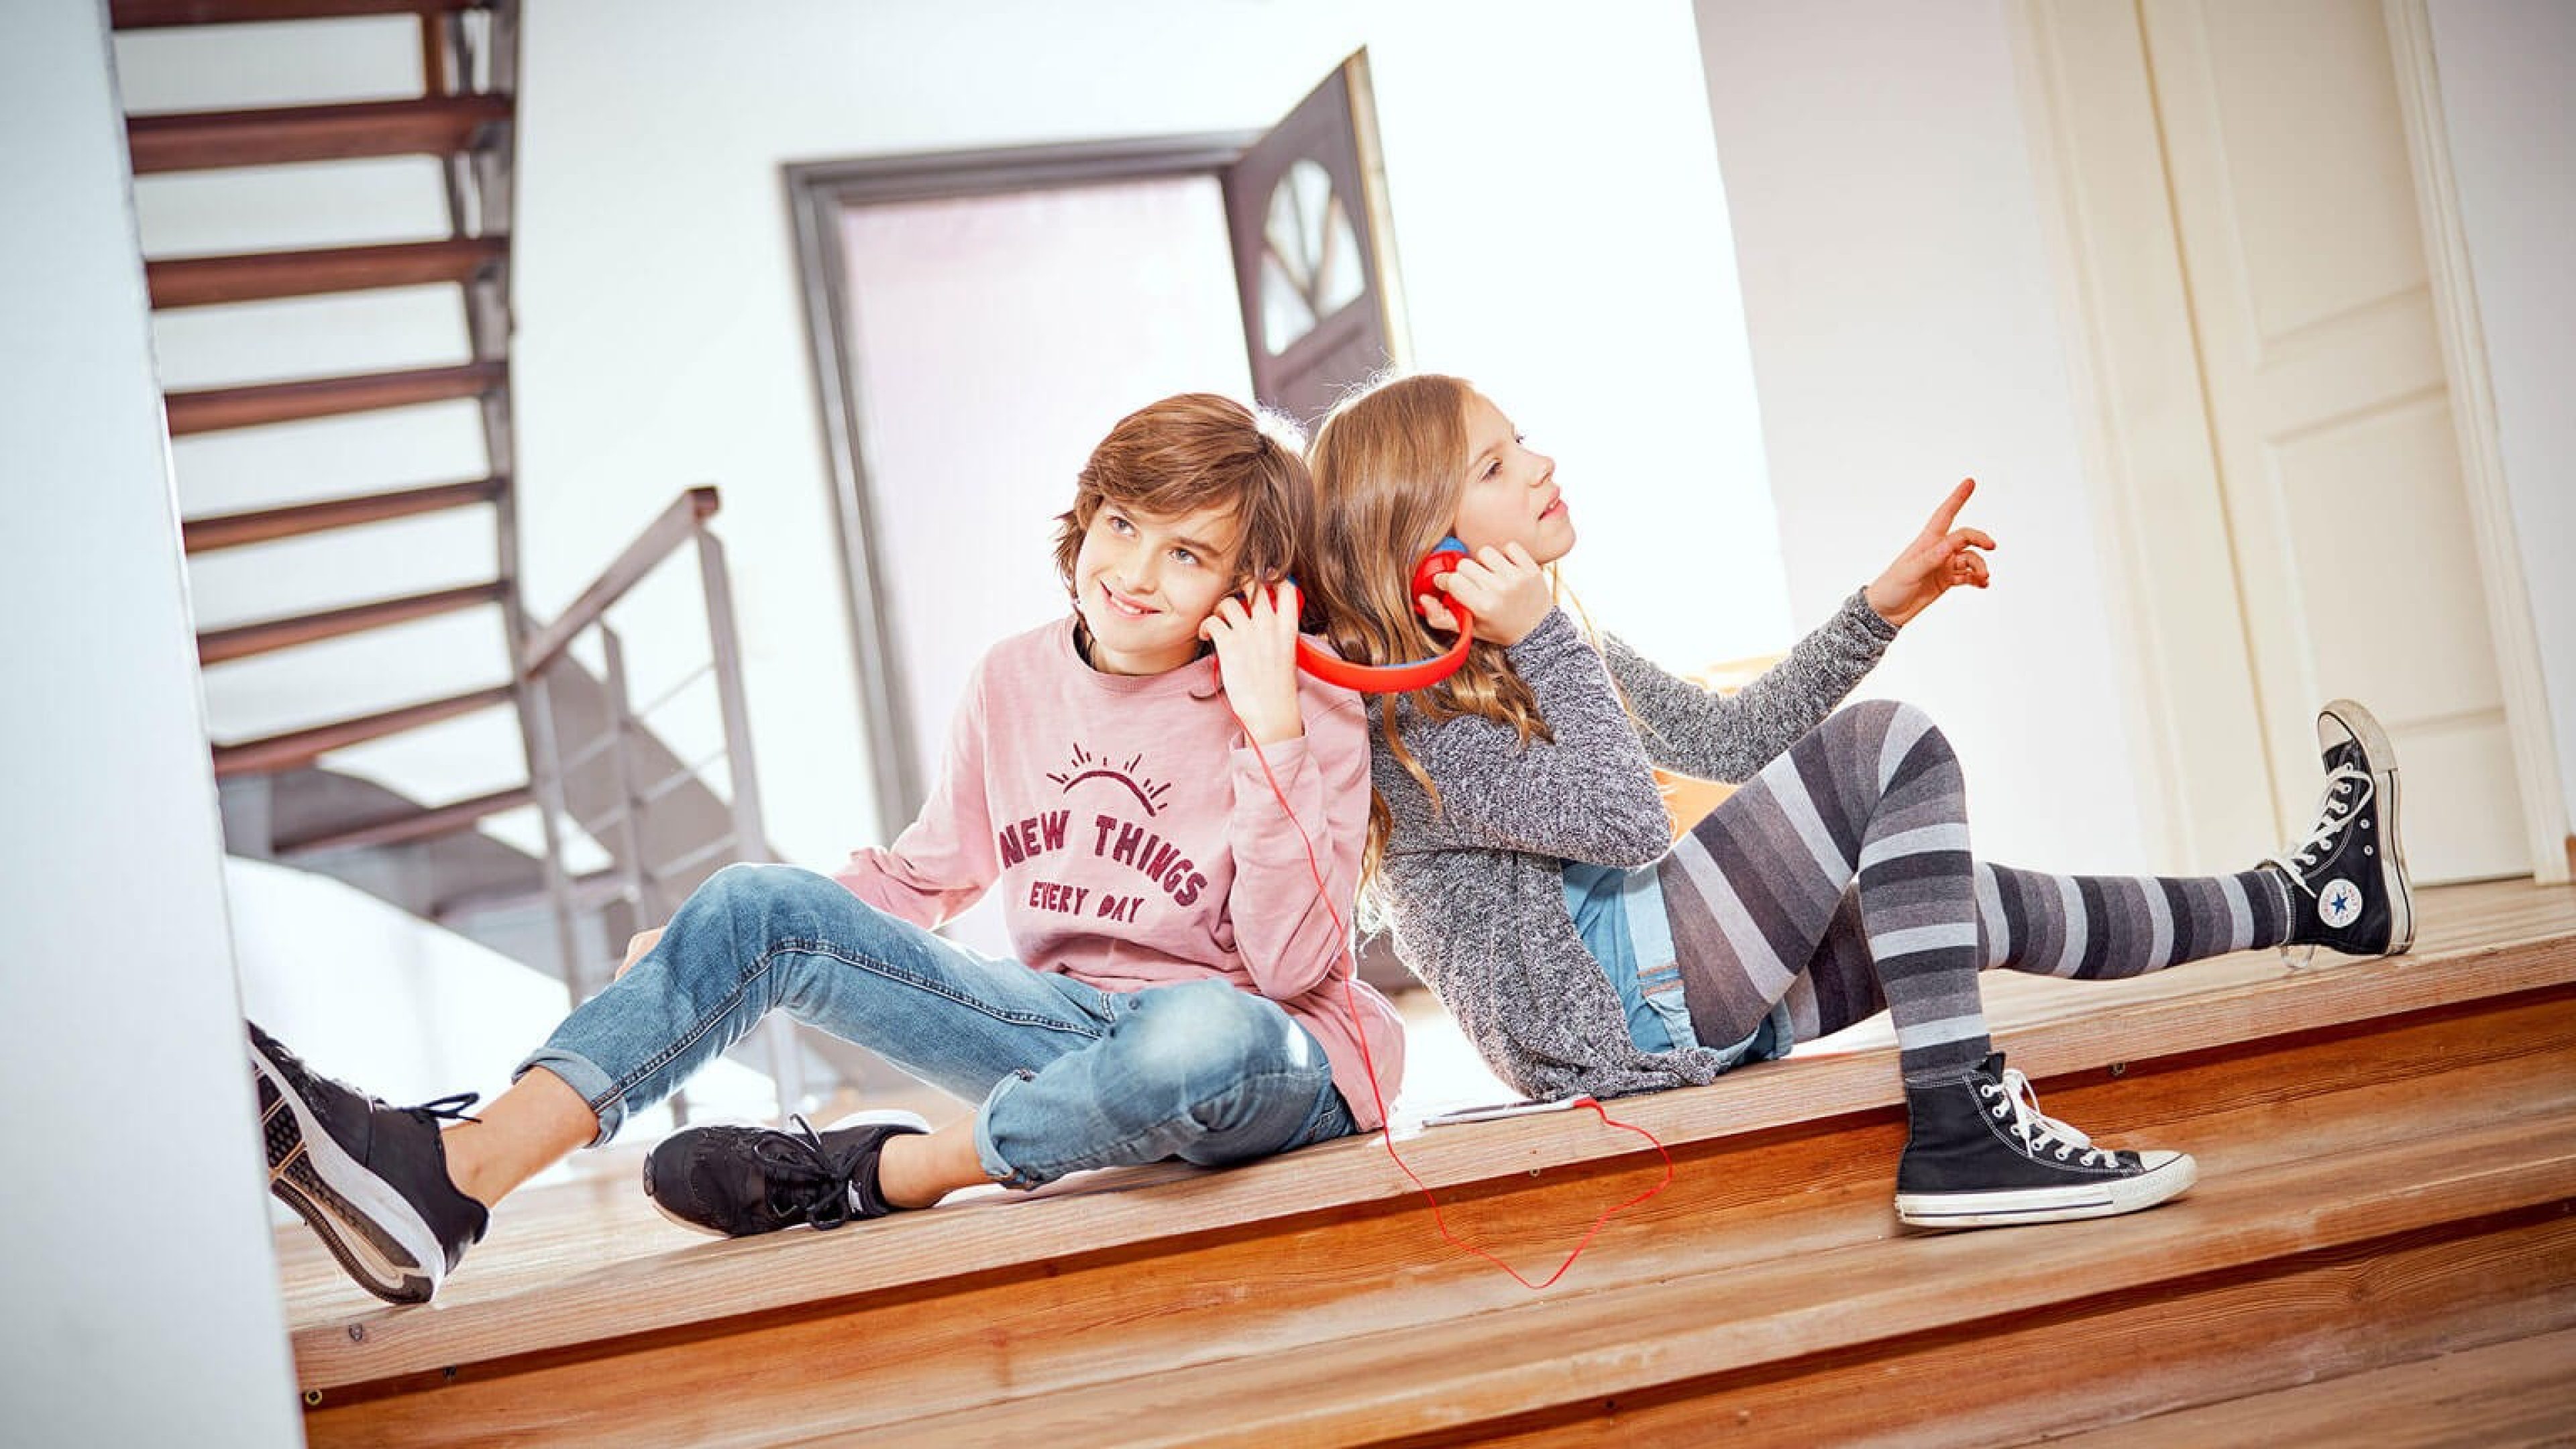 Zwei Schüler sitzen am Boden und teilen sich einen Kopfhörer